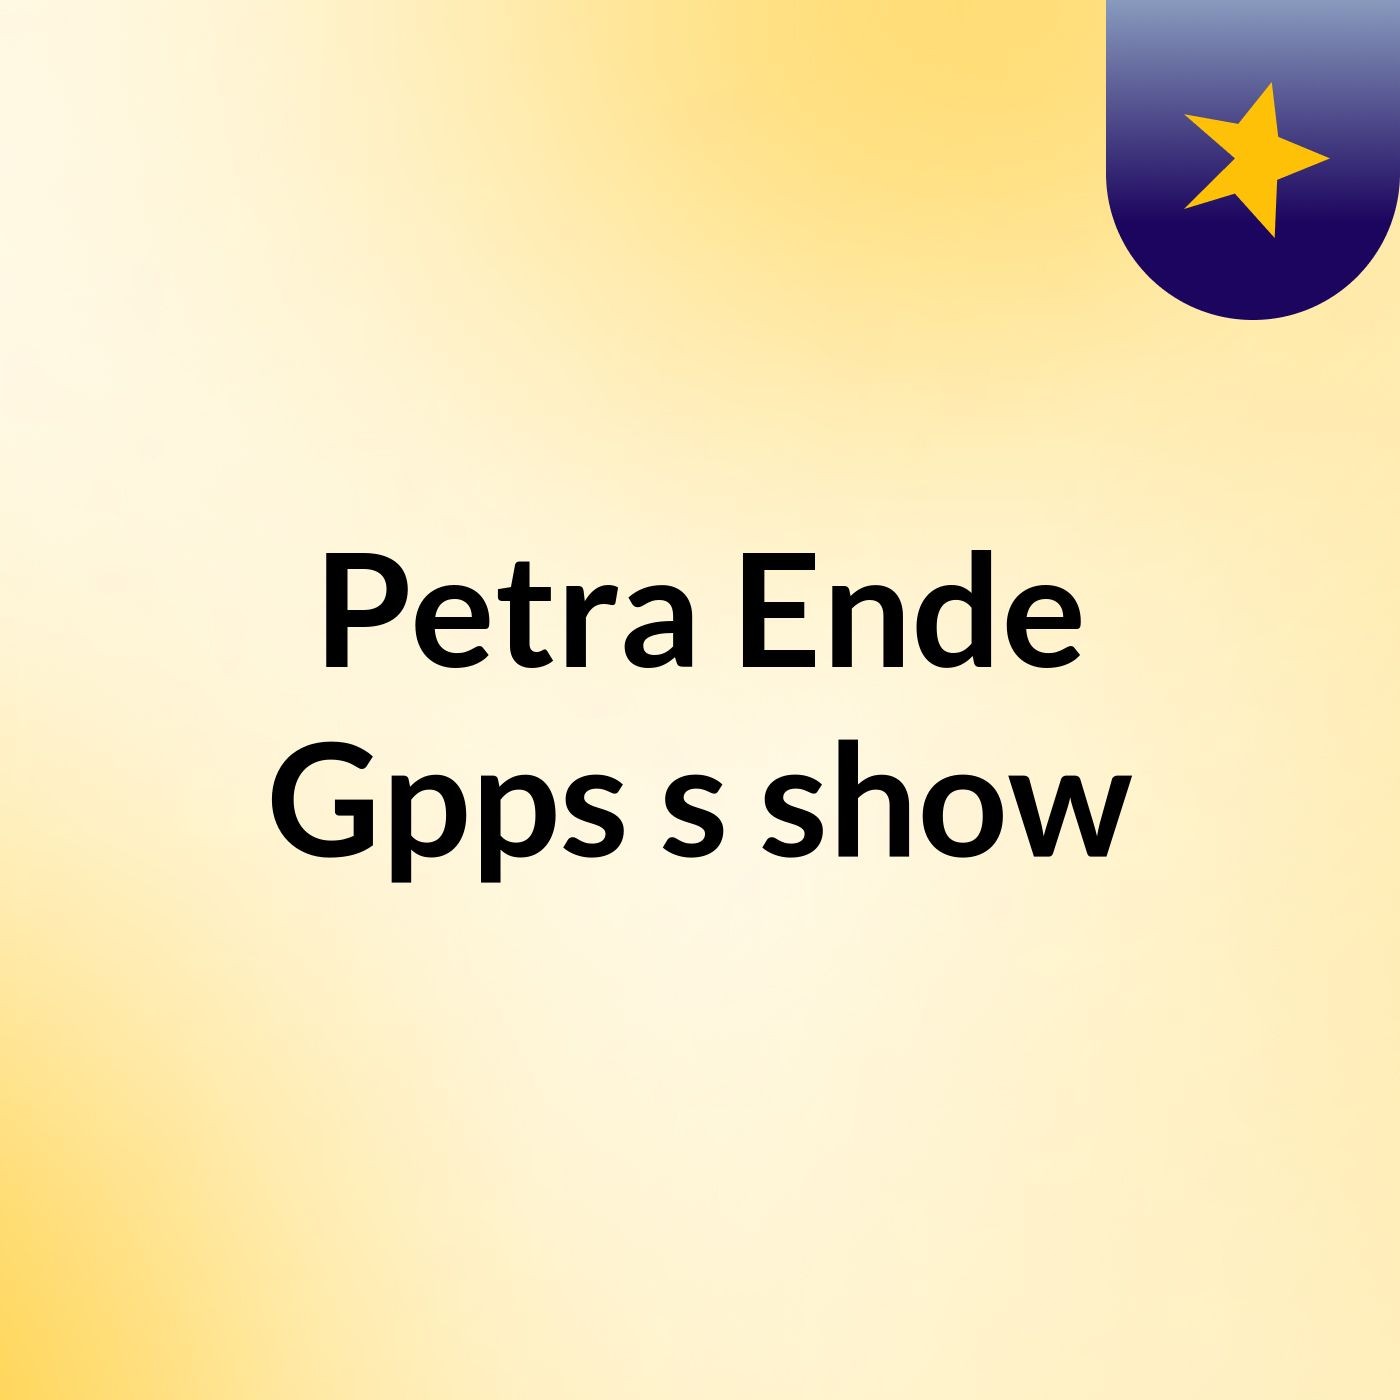 Petra Ende Gpps's gGospel Music Channel